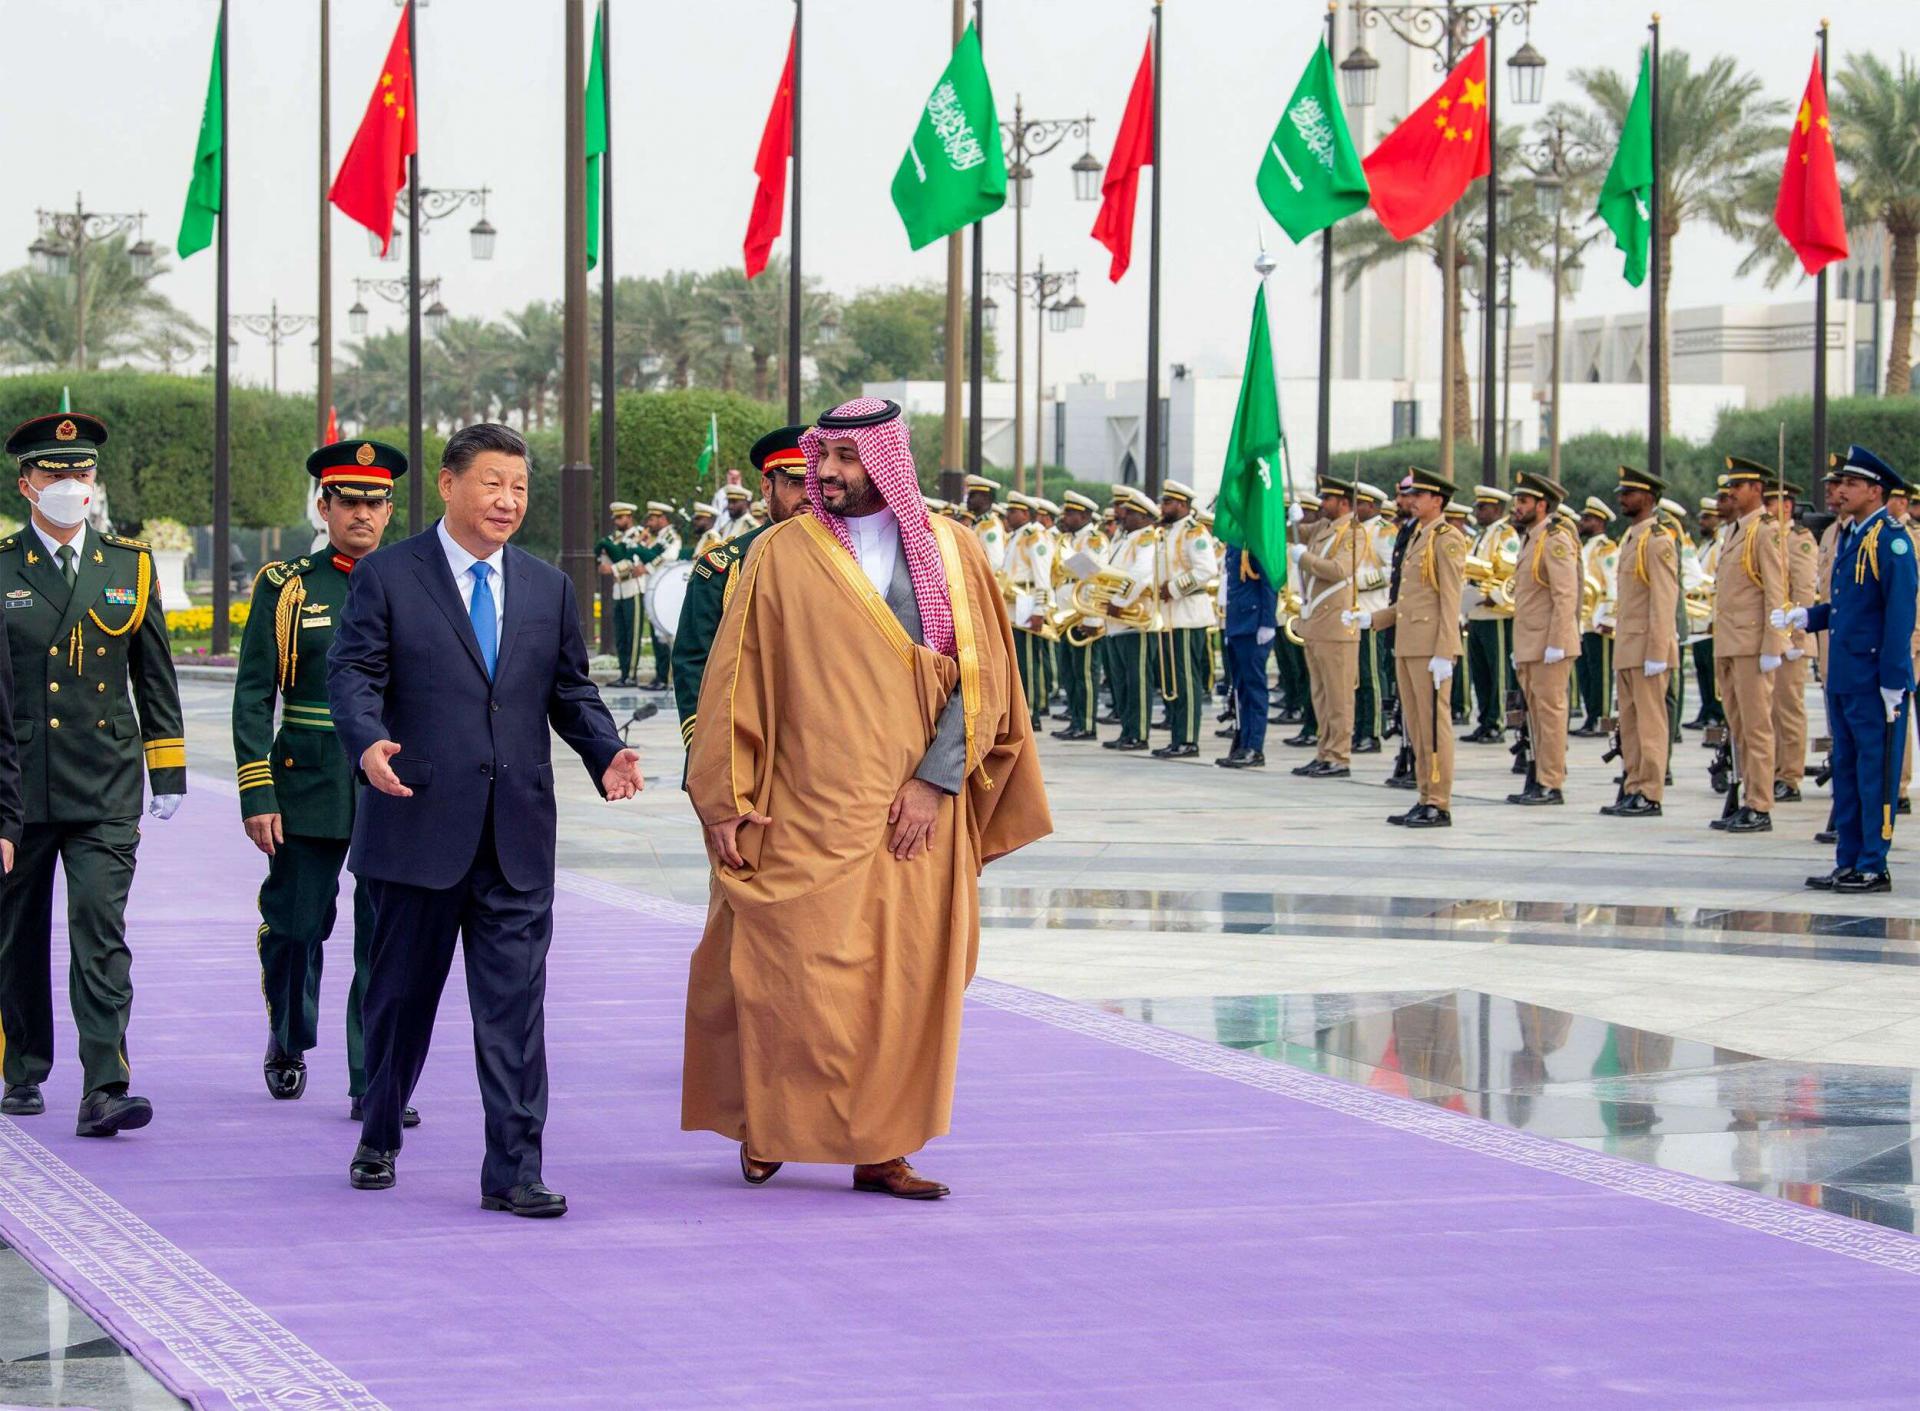 السعودية تحتفي بالرئيس الصيني على خلاف مع فعلته حين استقبلت الرئيس الأميركي قبل اشهر 